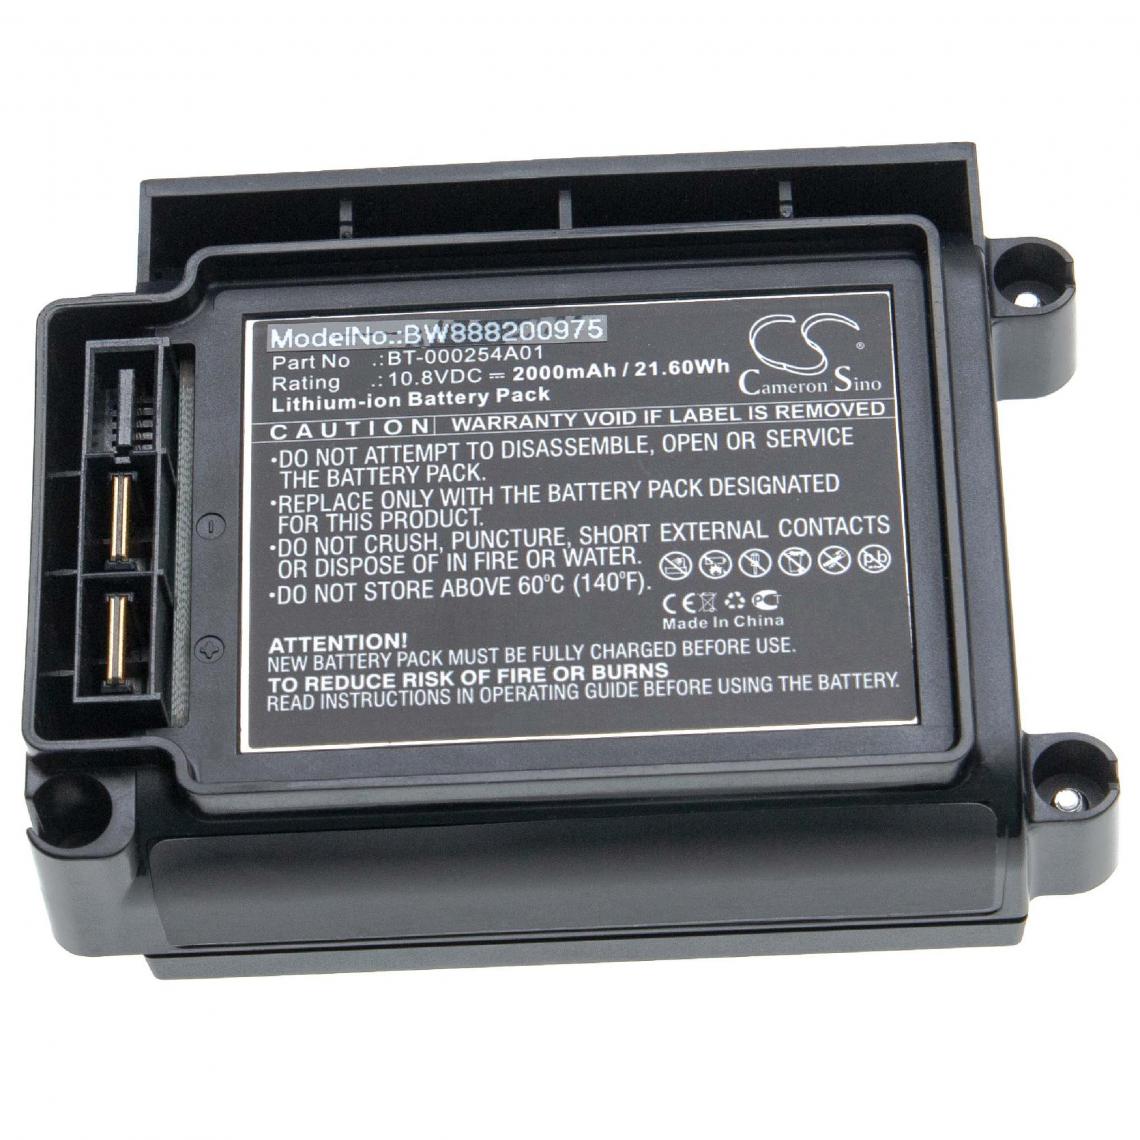 Vhbw - vhbw batterie remplace Zebra BT-000254A01, KT-VC80-BTRY1-01 pour GPS, ordinateur de bord (2000mAh, 10,8V, Li-Ion) - Caméras Sportives